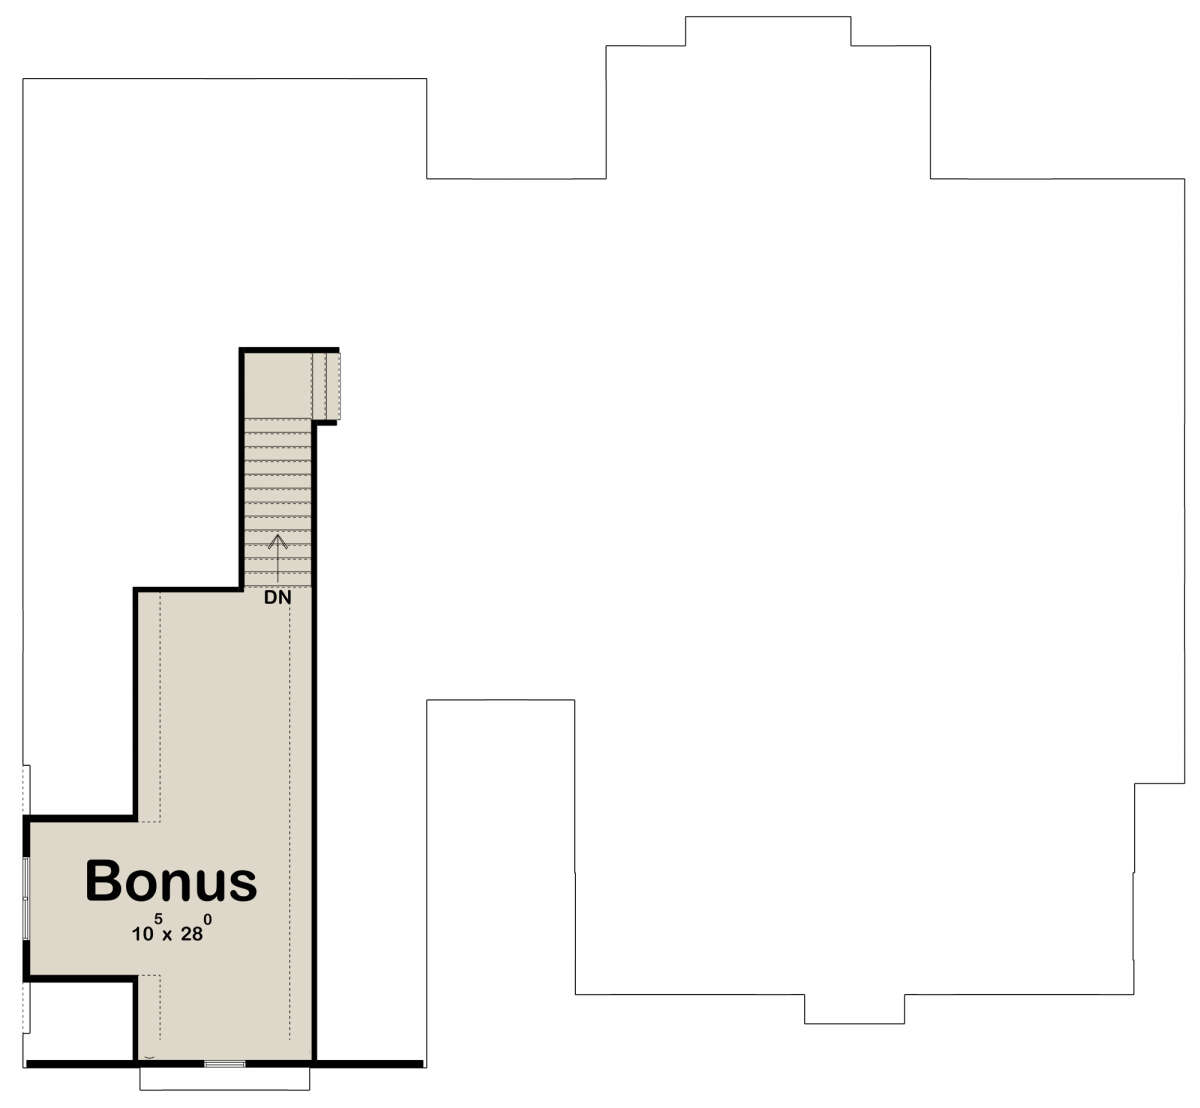 Bonus Room for House Plan #963-00630